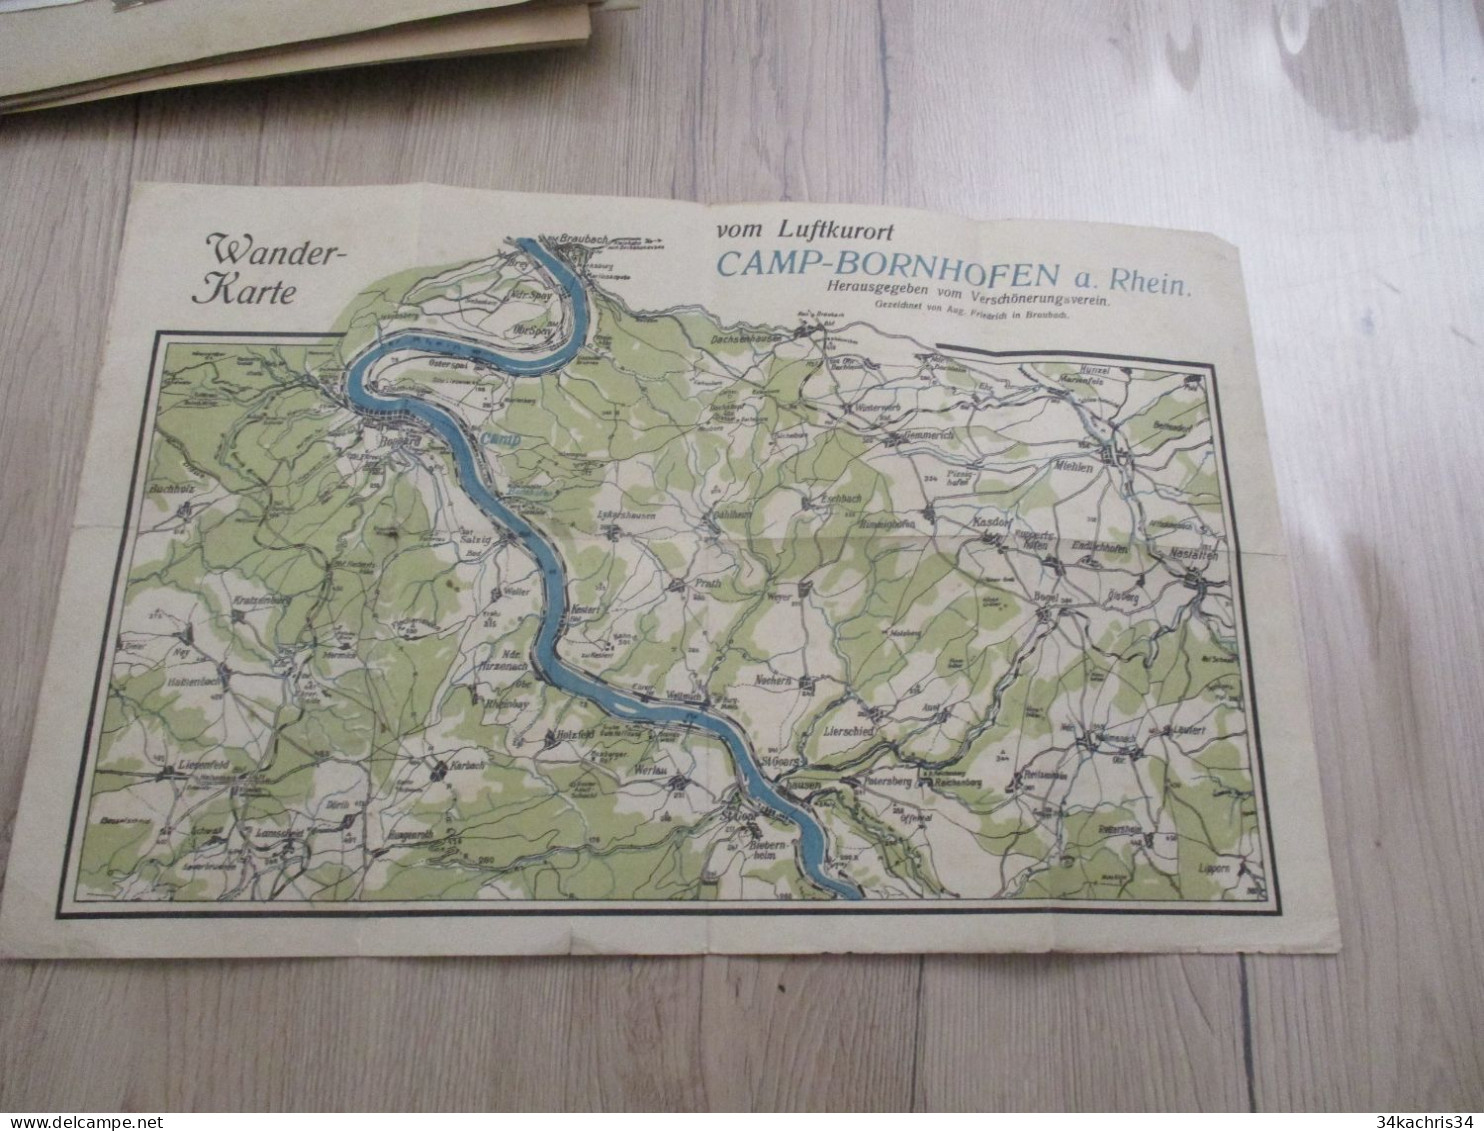 Carte Géographique En Allemand Wander Karte Vom Liuftkurort Camp Bornhofen Am Rhein 41 X 26.5 Environs - Geographical Maps